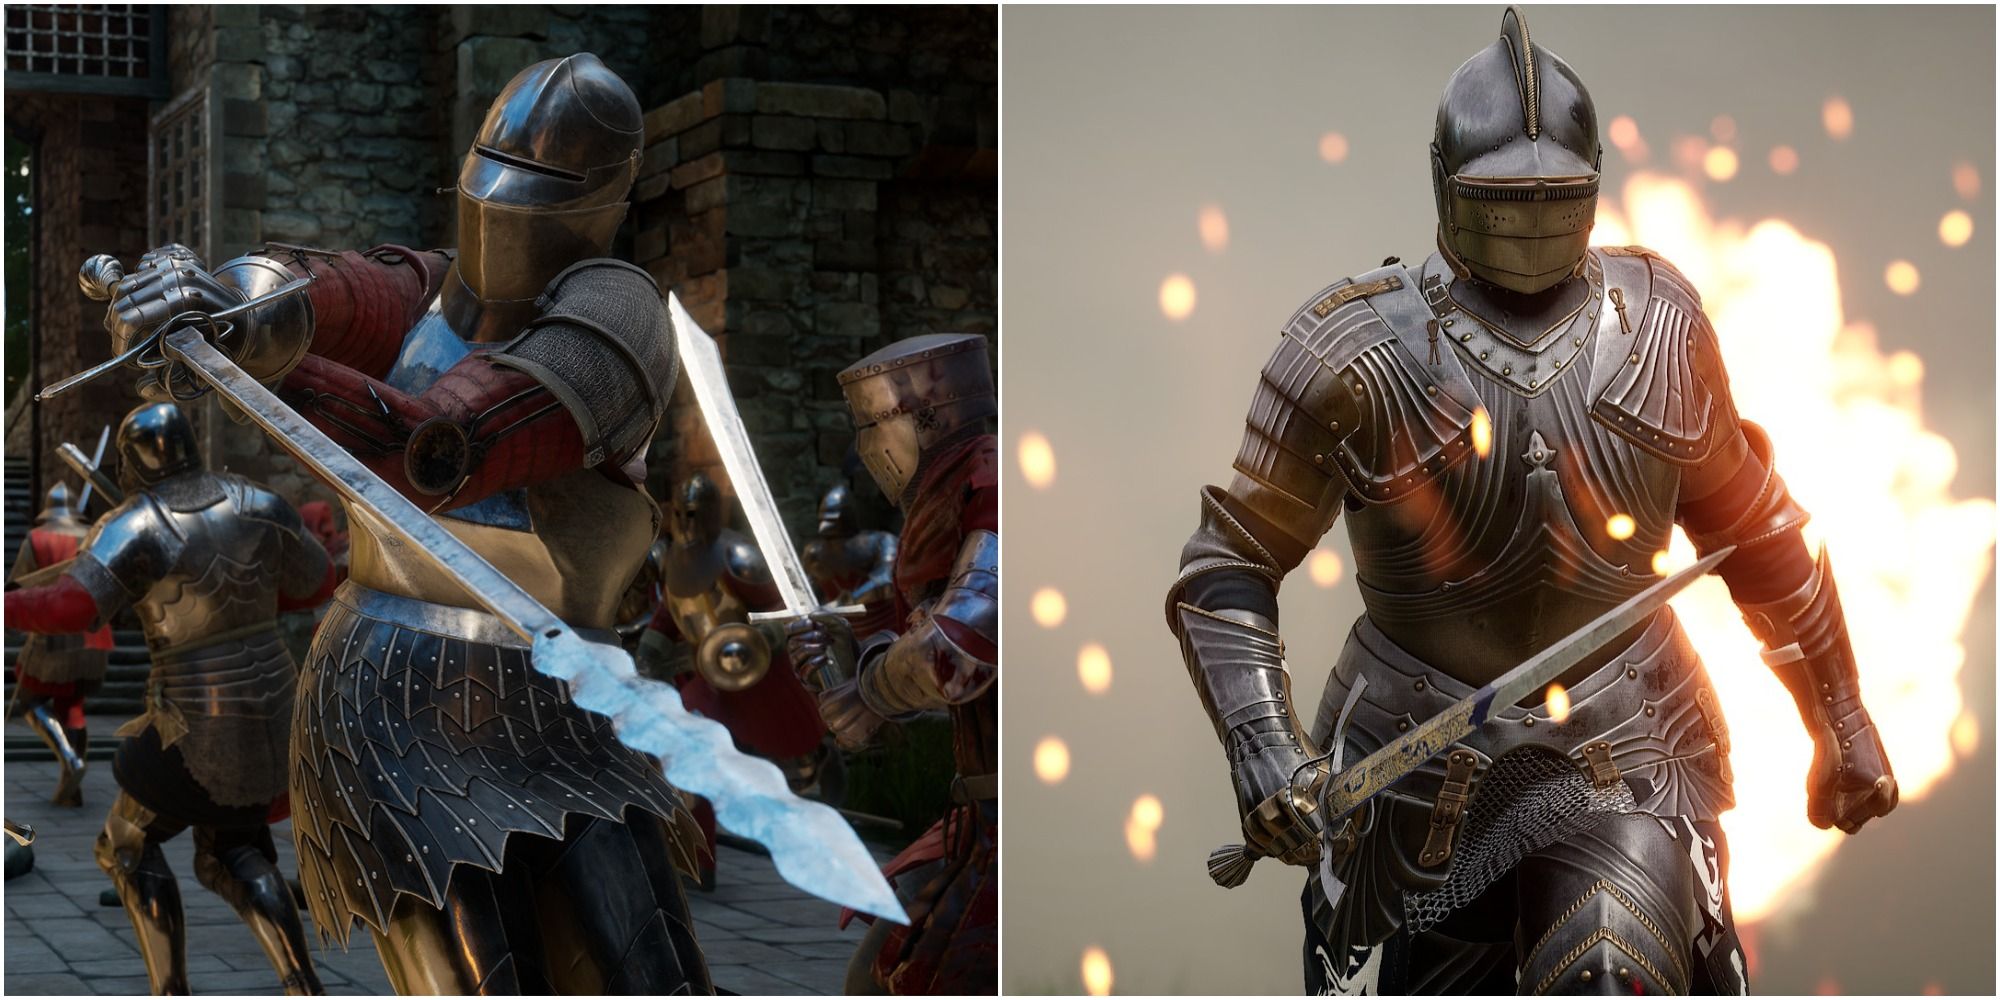 Mordhau Best Swords Ranked split image of knights in gameplay